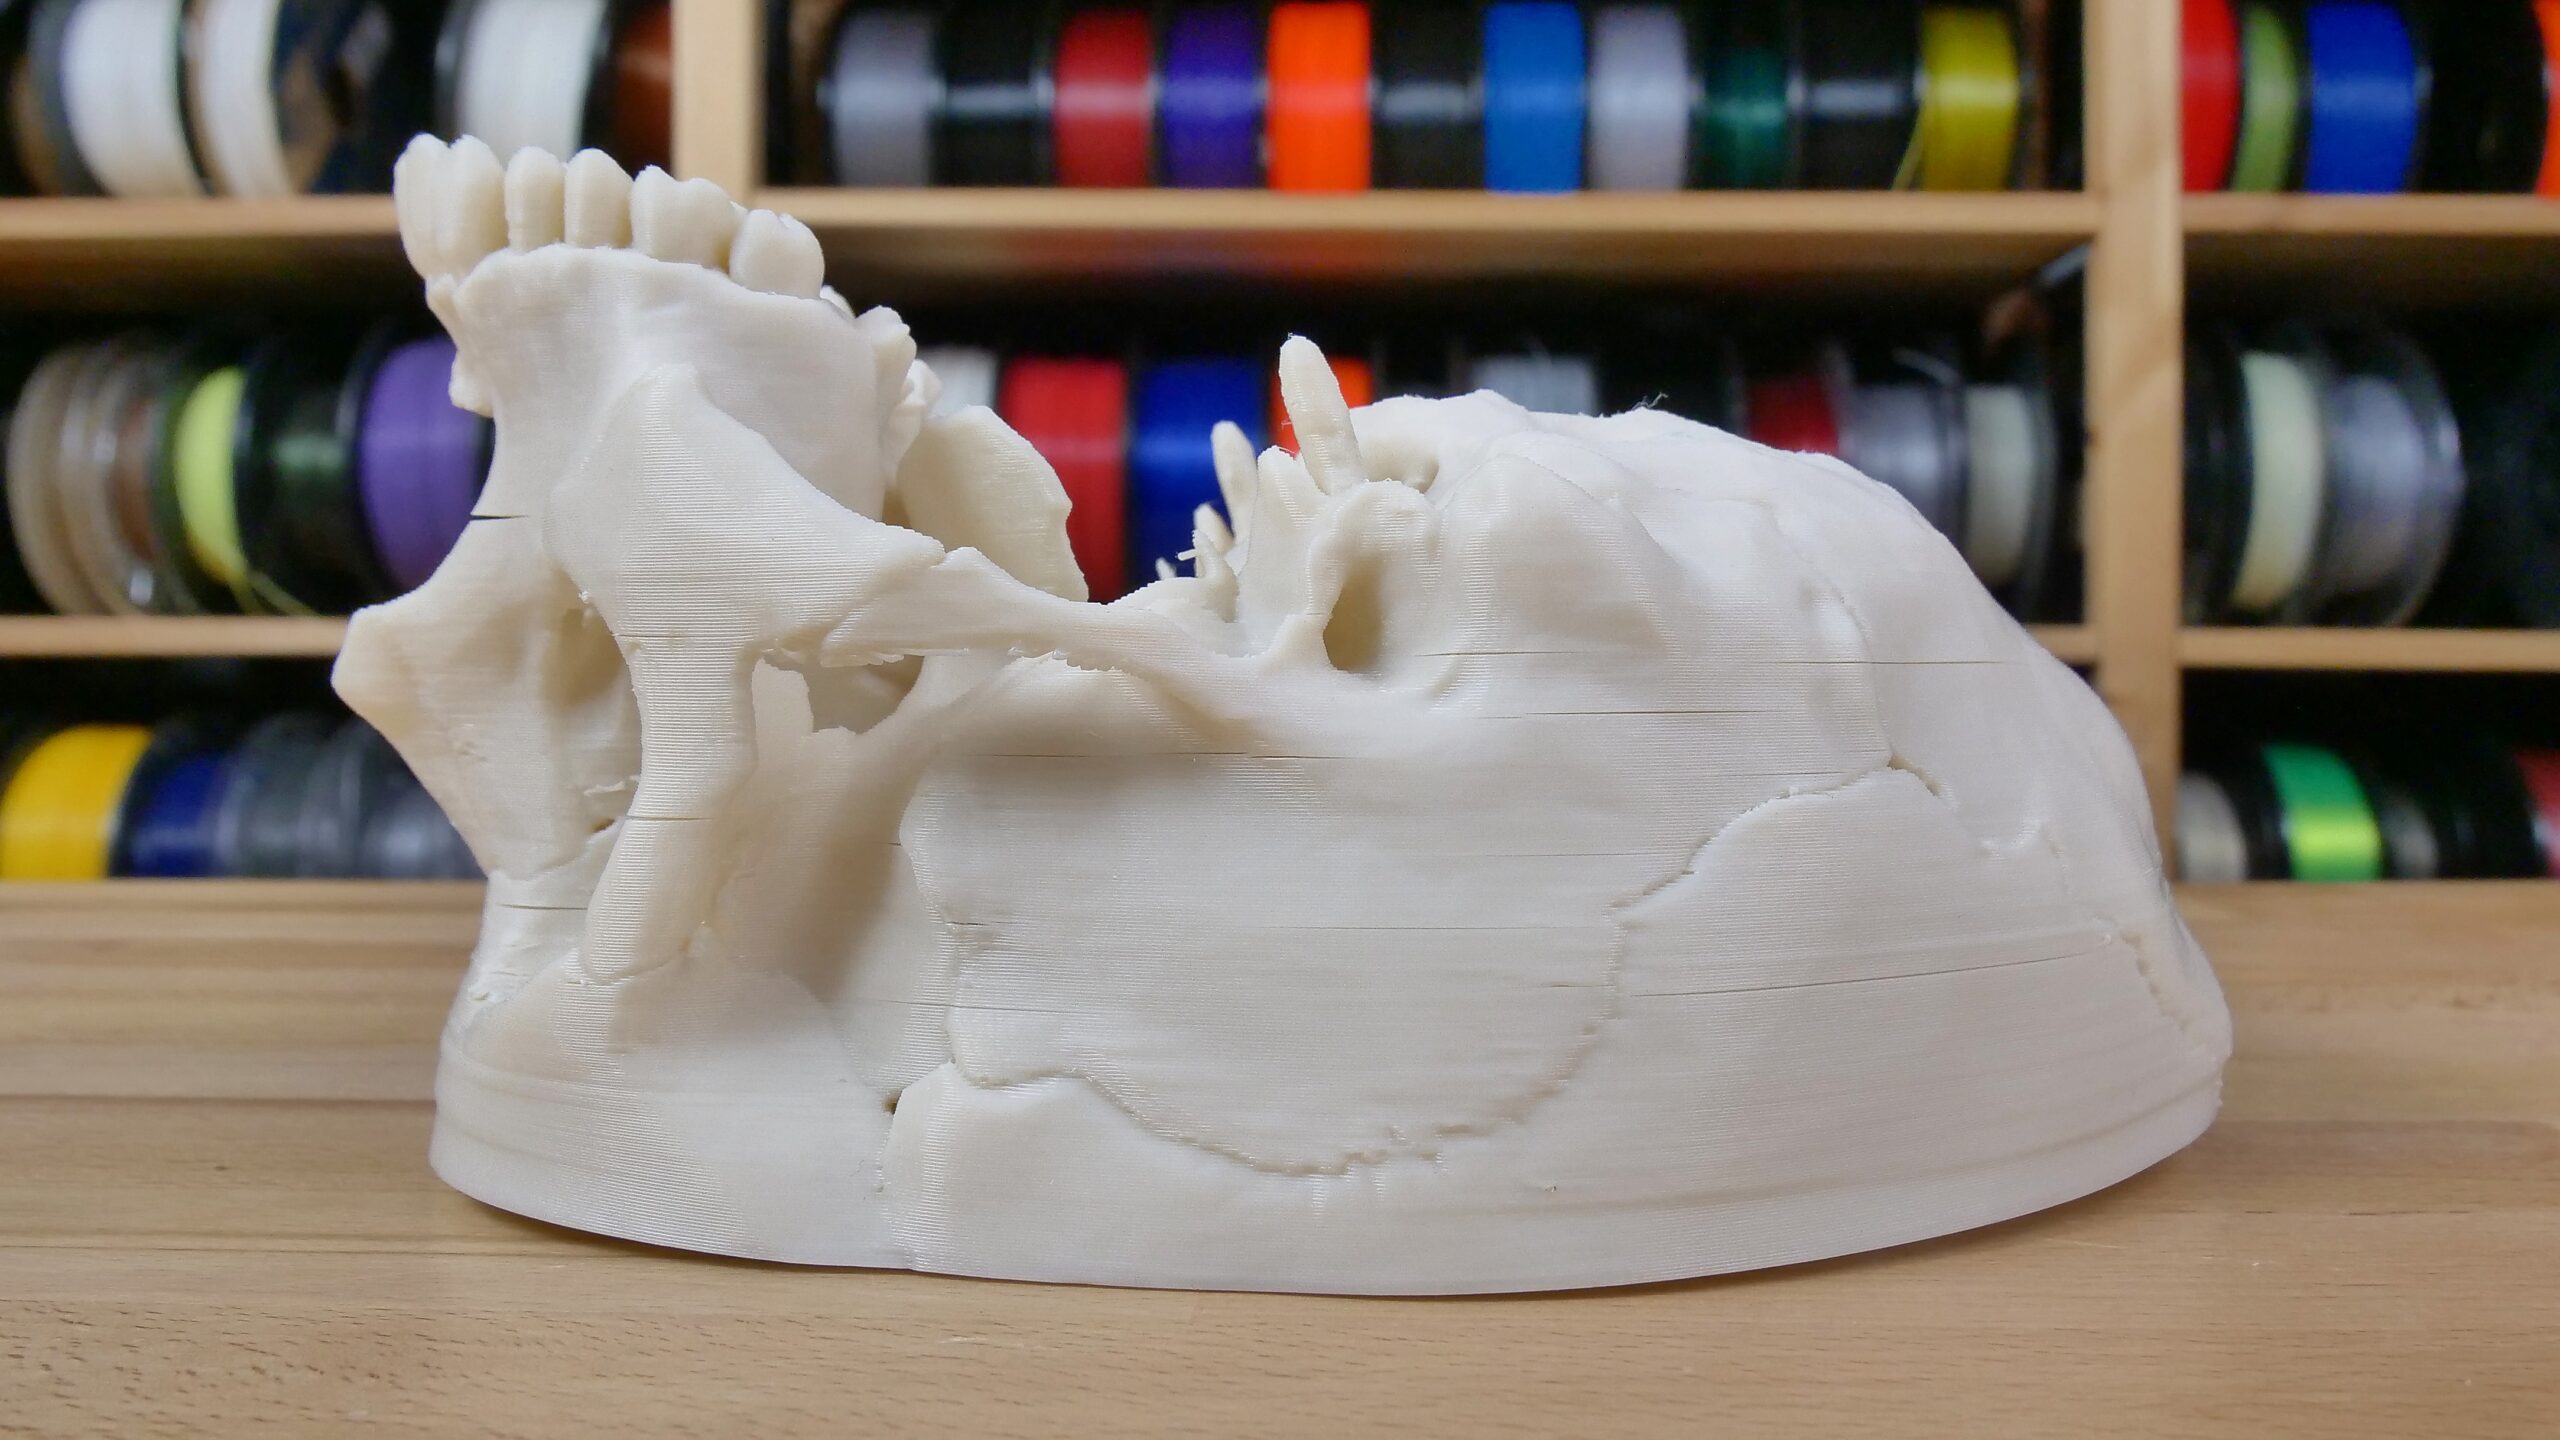 Améliorez vos impressions 3D avec le lissage chimique - Original Prusa 3D  Printers